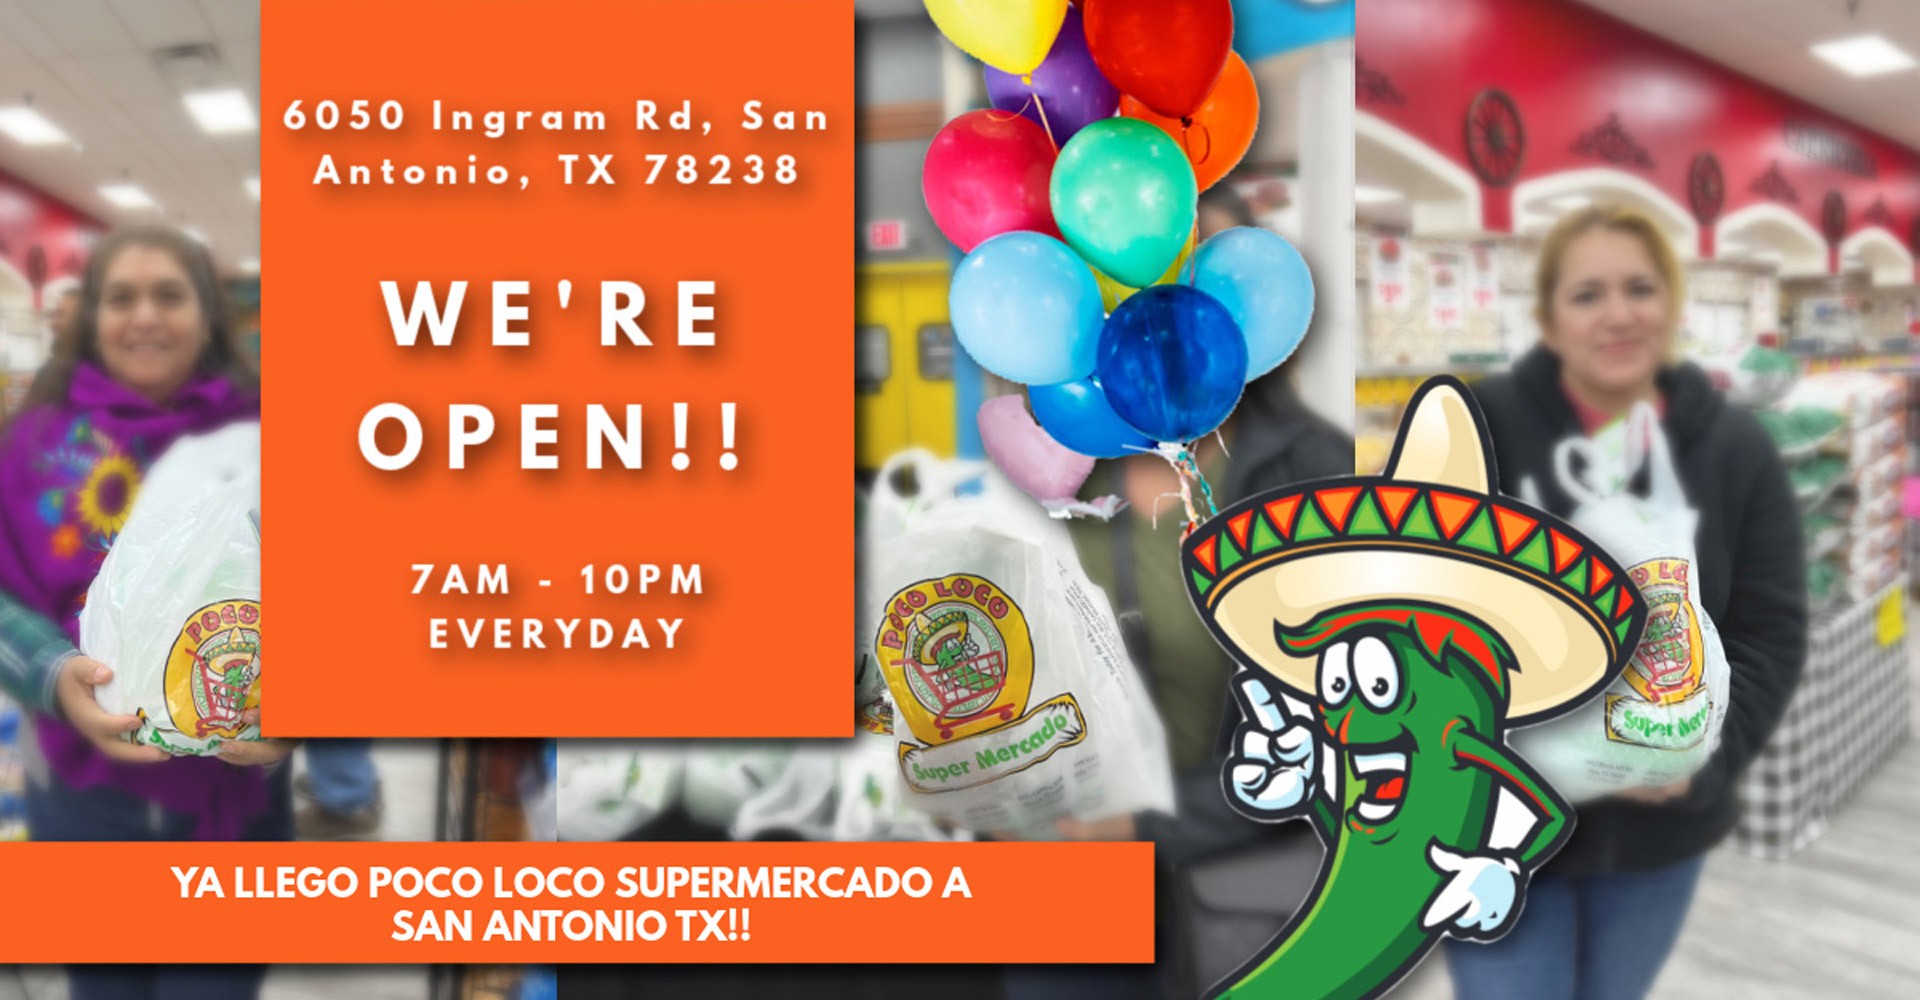 We're Open! San Antonio TX